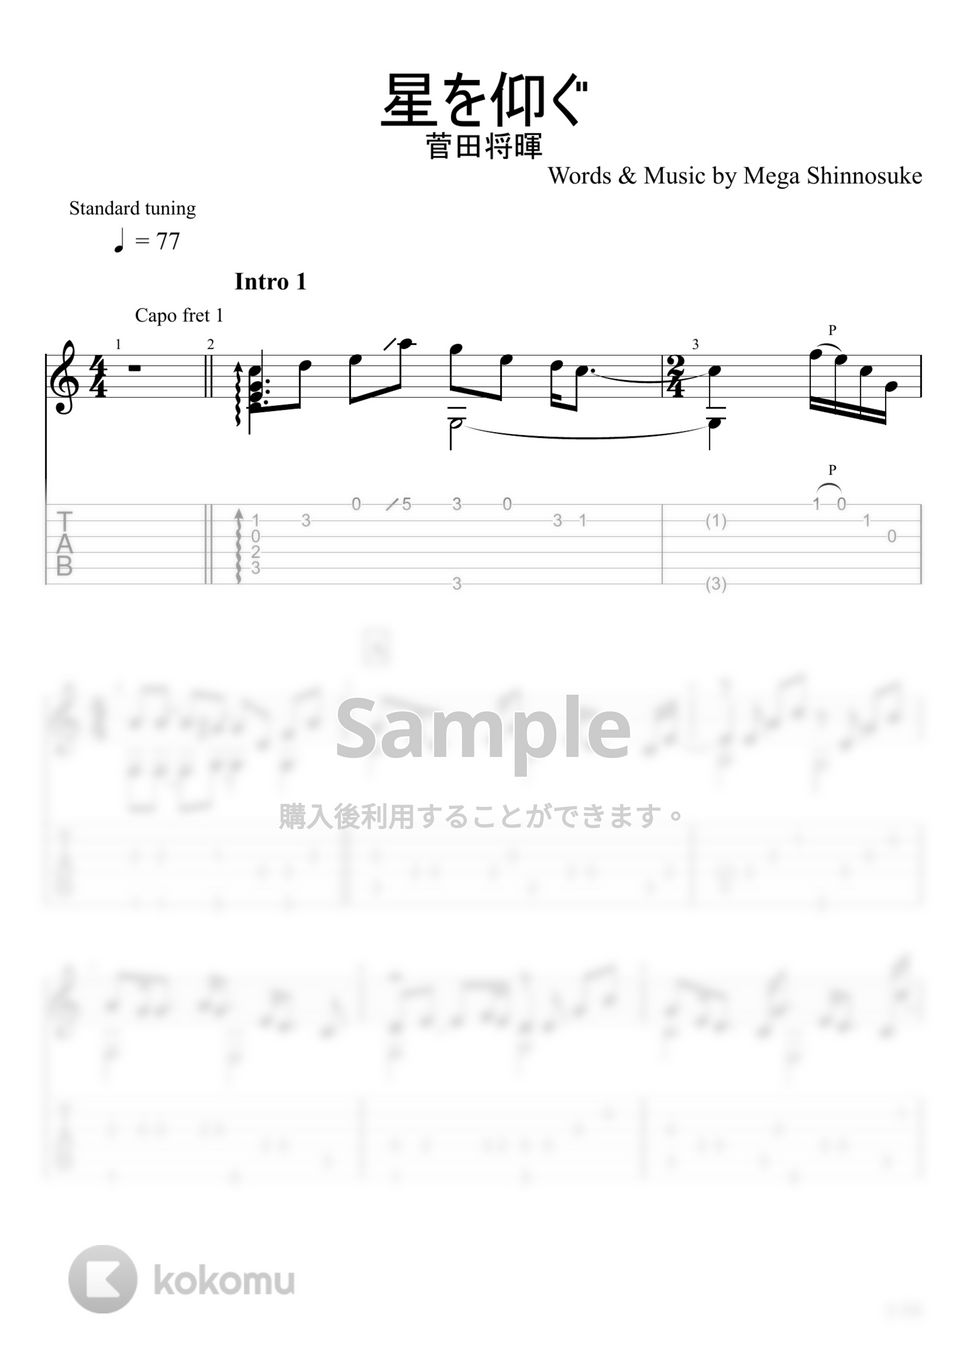 菅田将暉 - 星を仰ぐ (ソロギター) by u3danchou